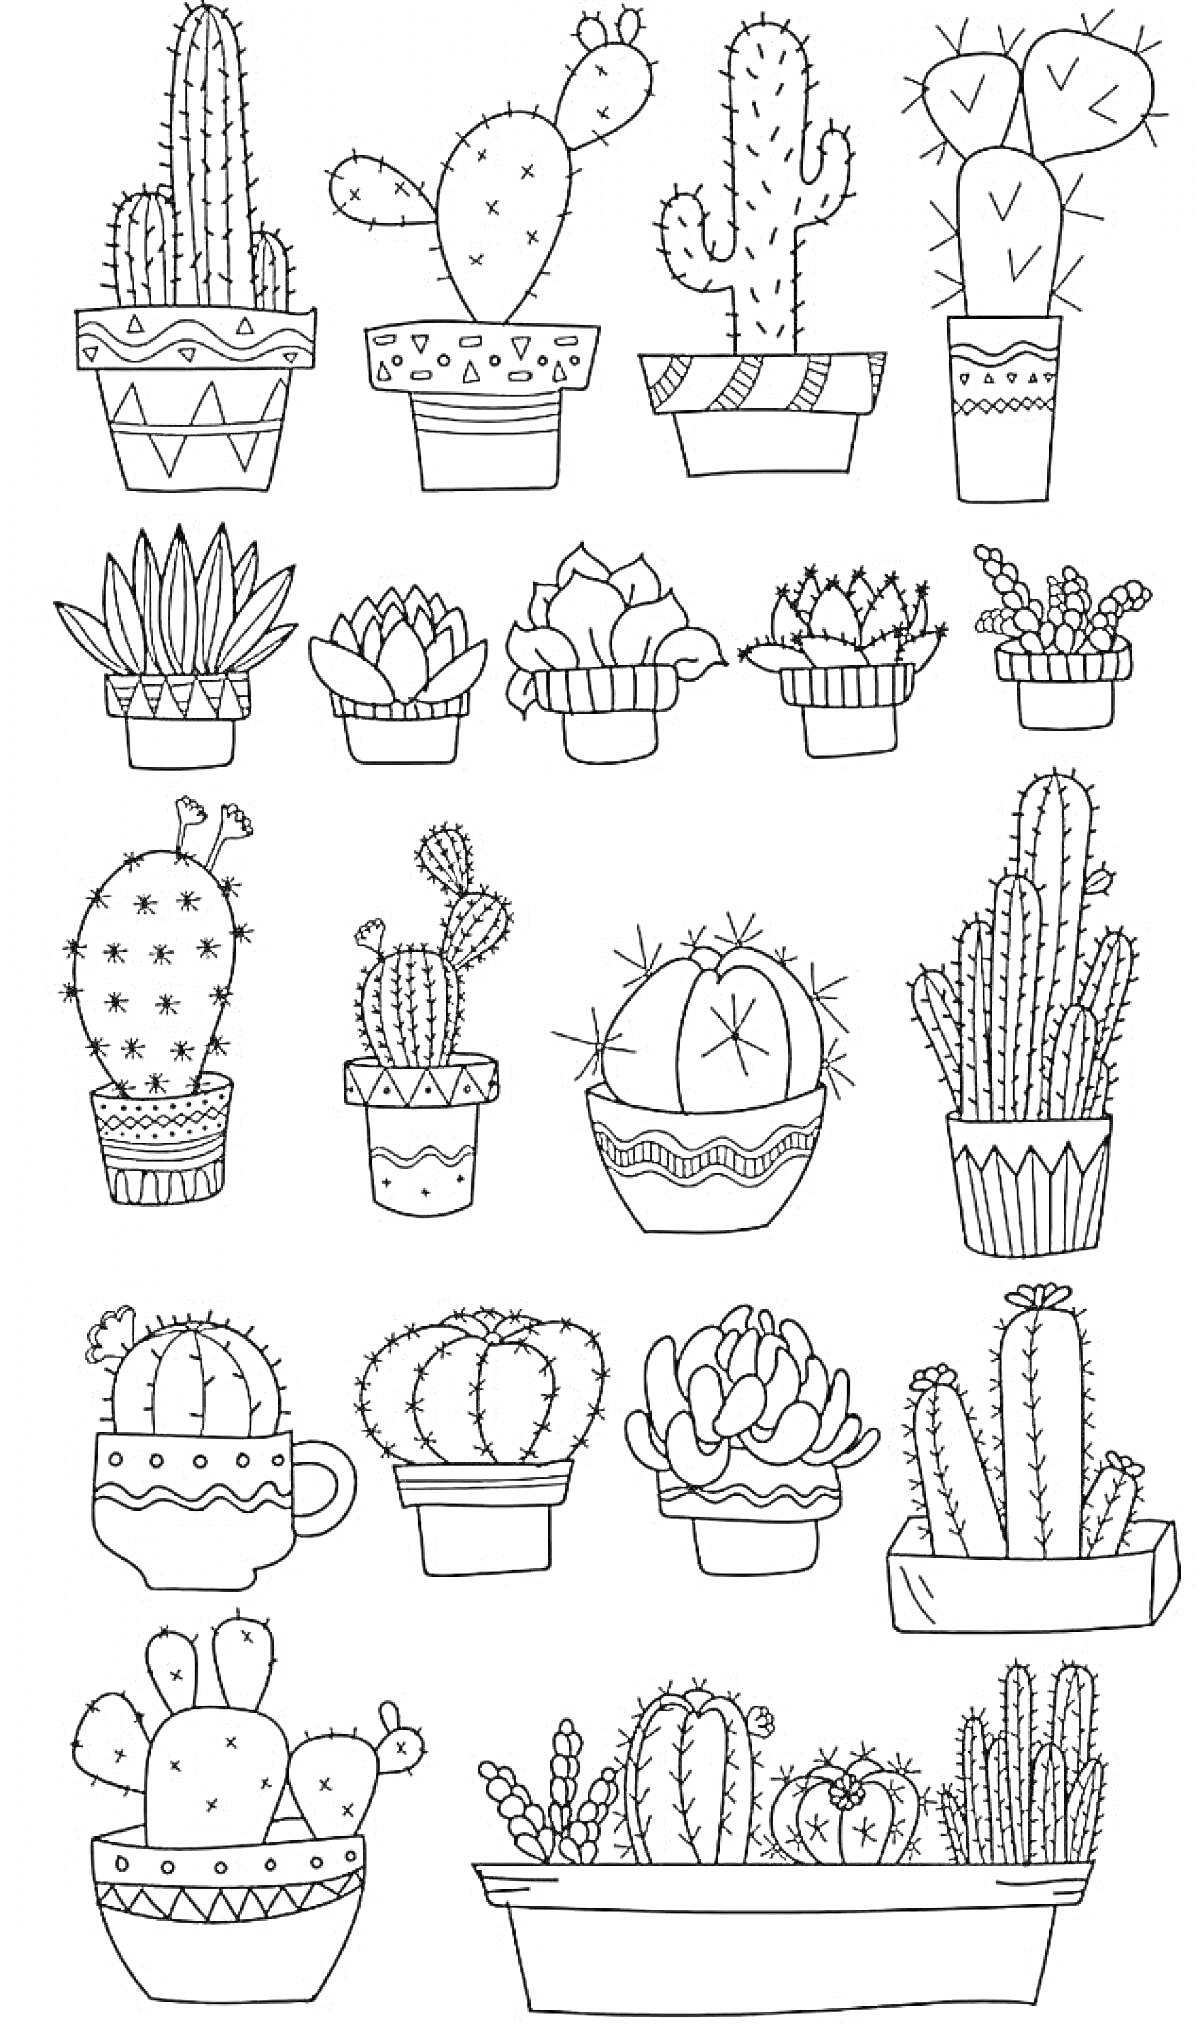 Раскраска Кактусы в горшках, различные виды кактусов в декоративных горшках